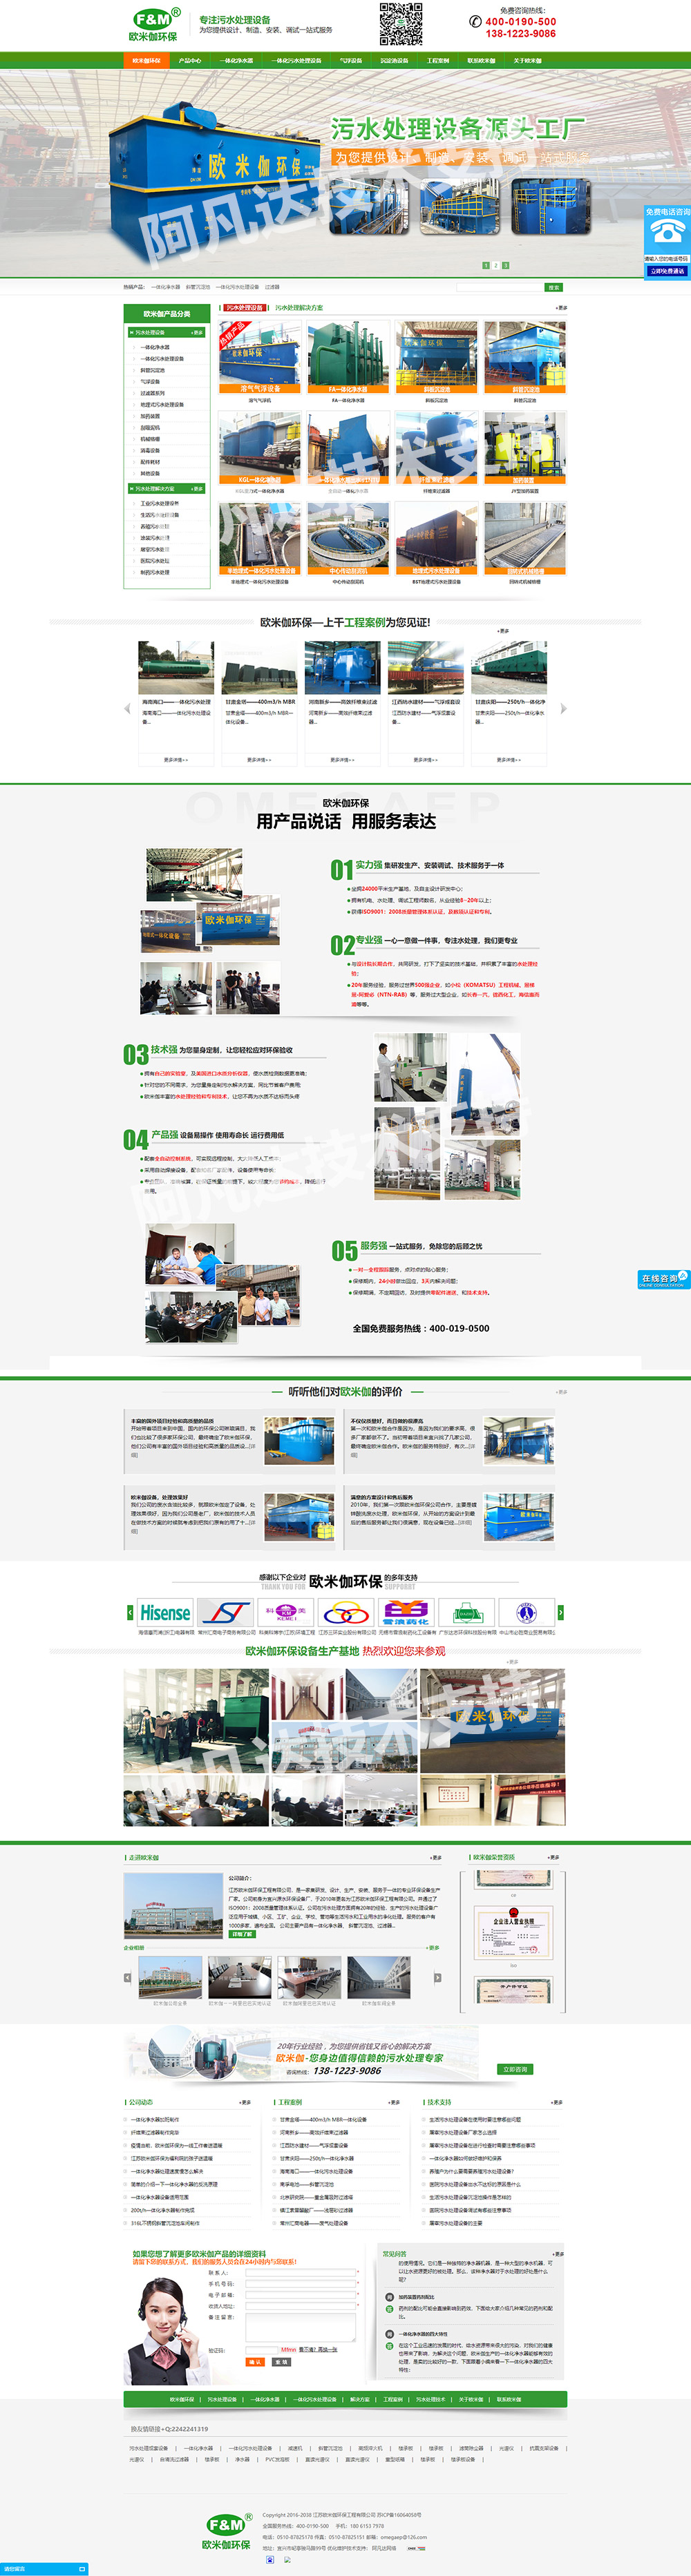 宜兴欧米伽环保营销型网站建设案例